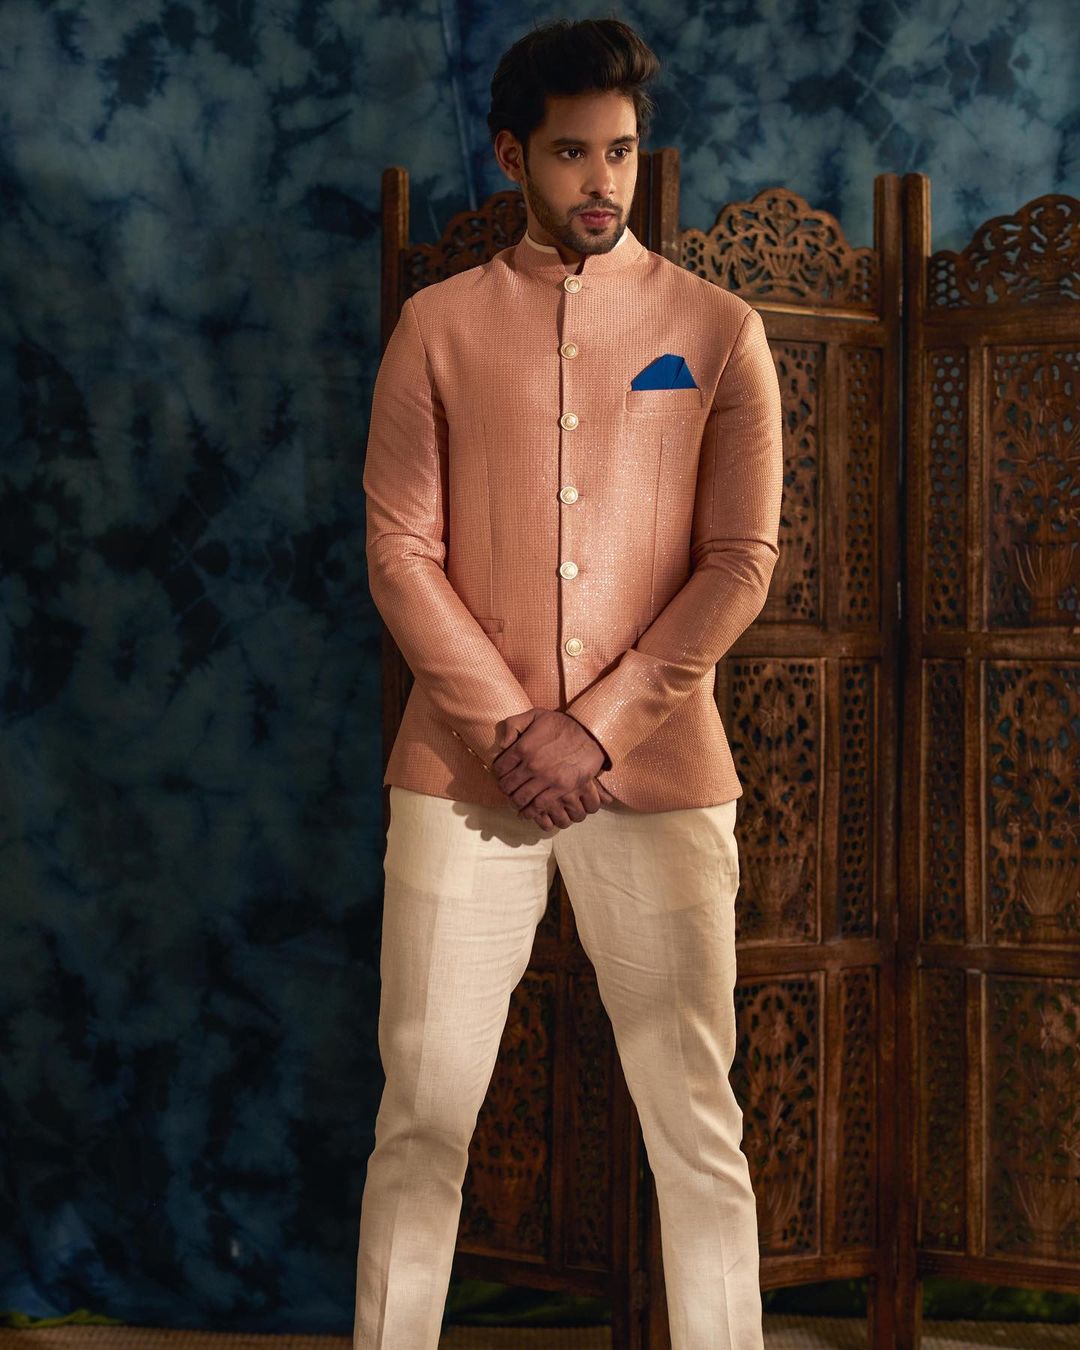 60 Jodhpuri Suits for men - Redefining Royal Fashion (updated)